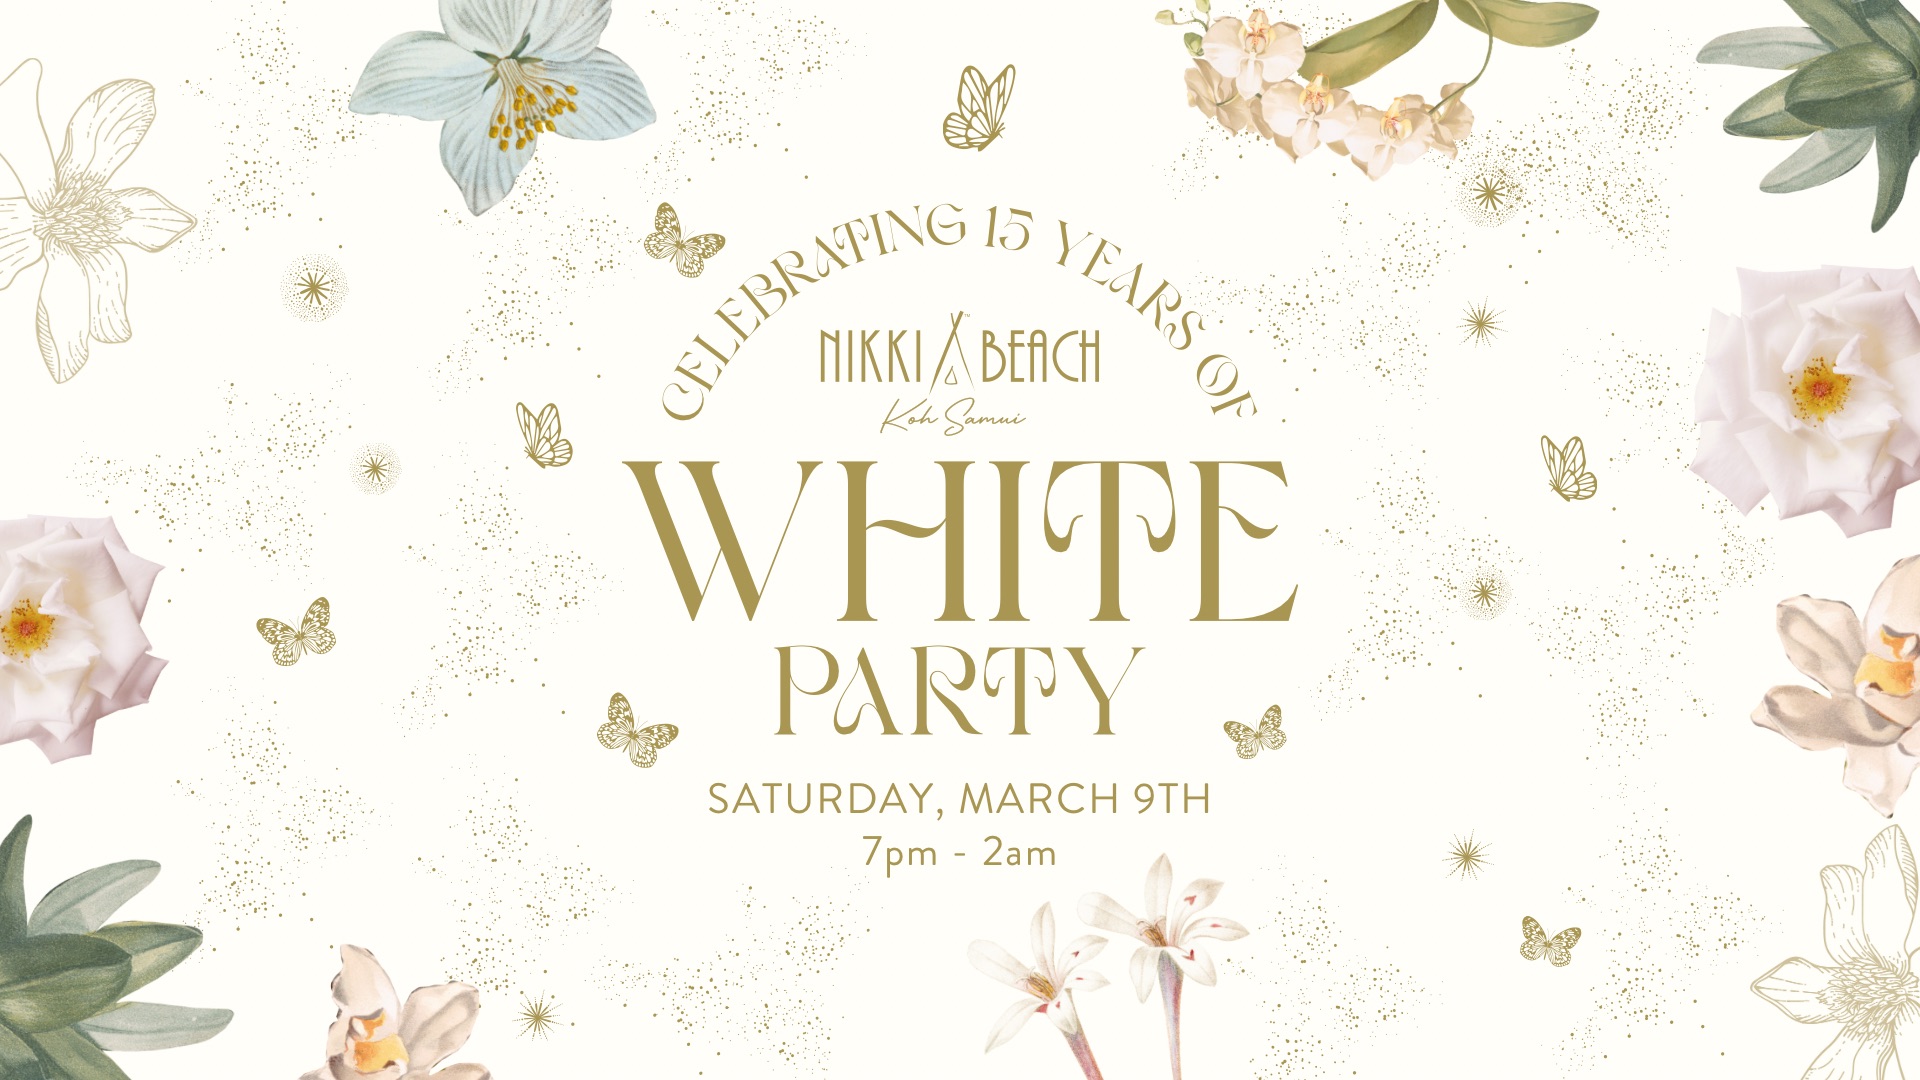 Weiße Party – Wir feiern 15 Jahre Nikki Beach Koh Samui